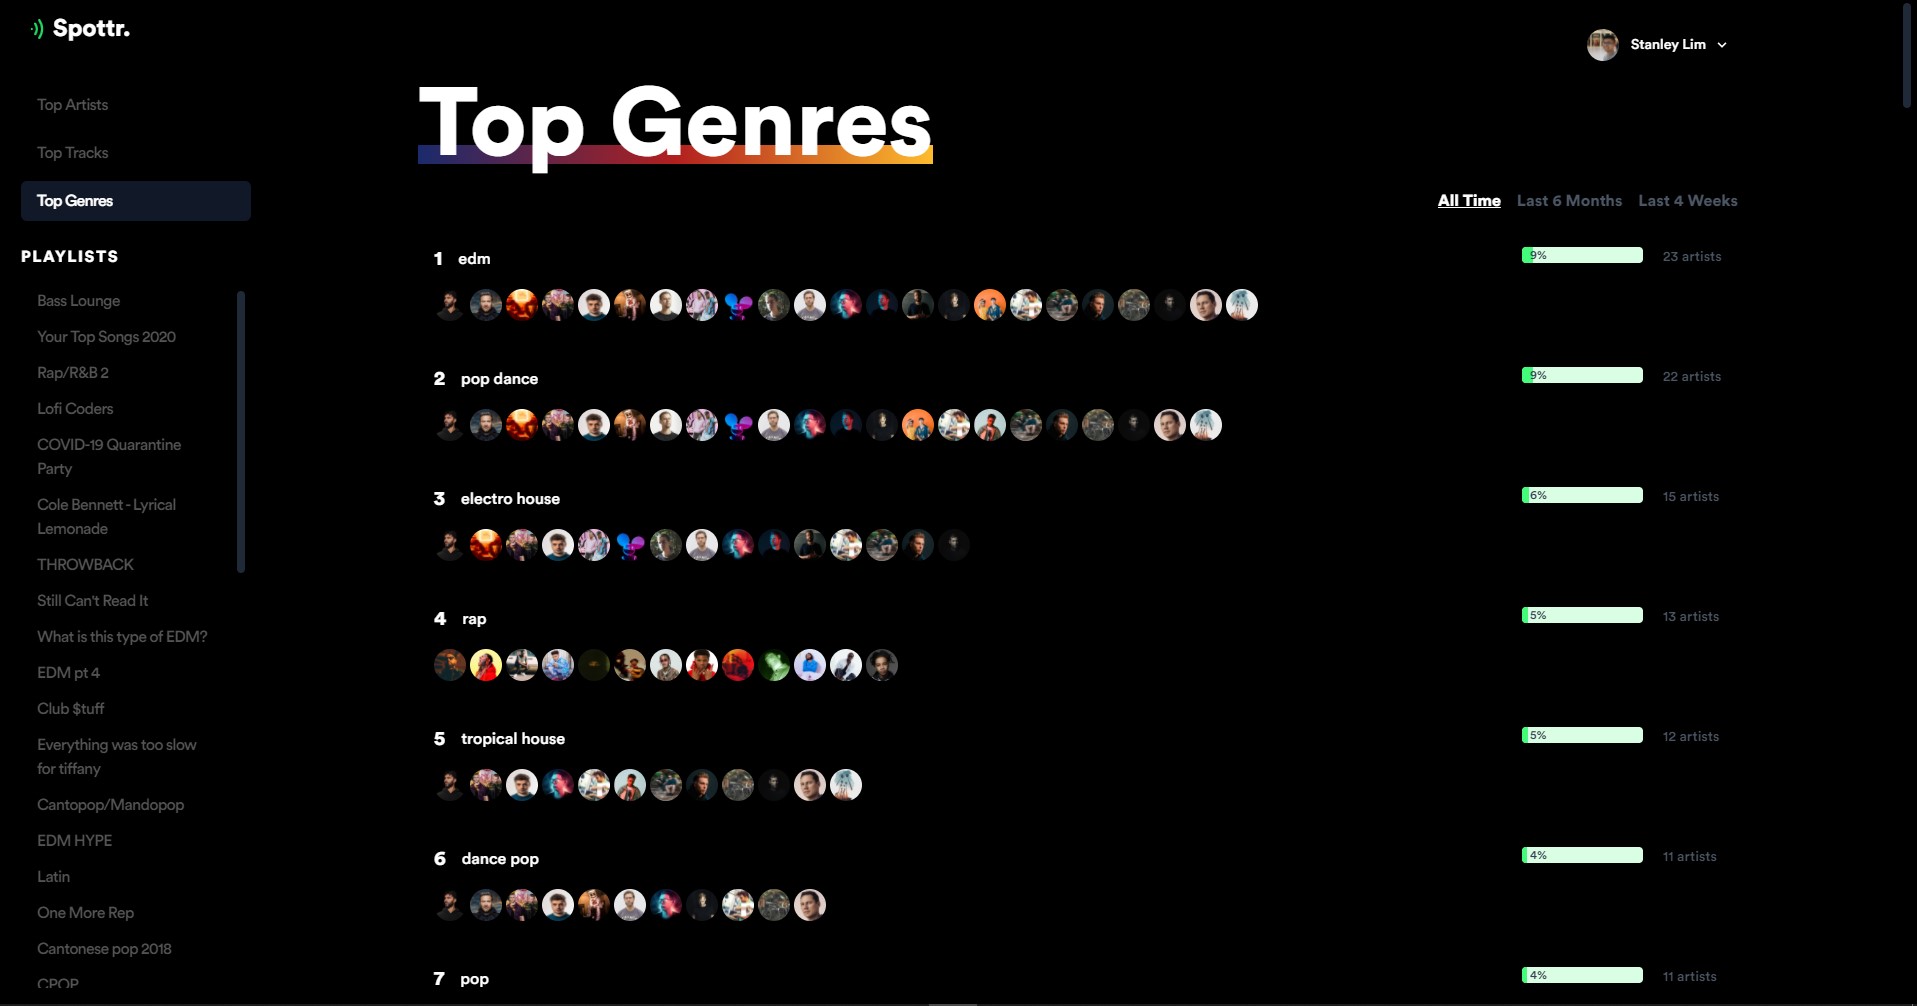 Top Genres